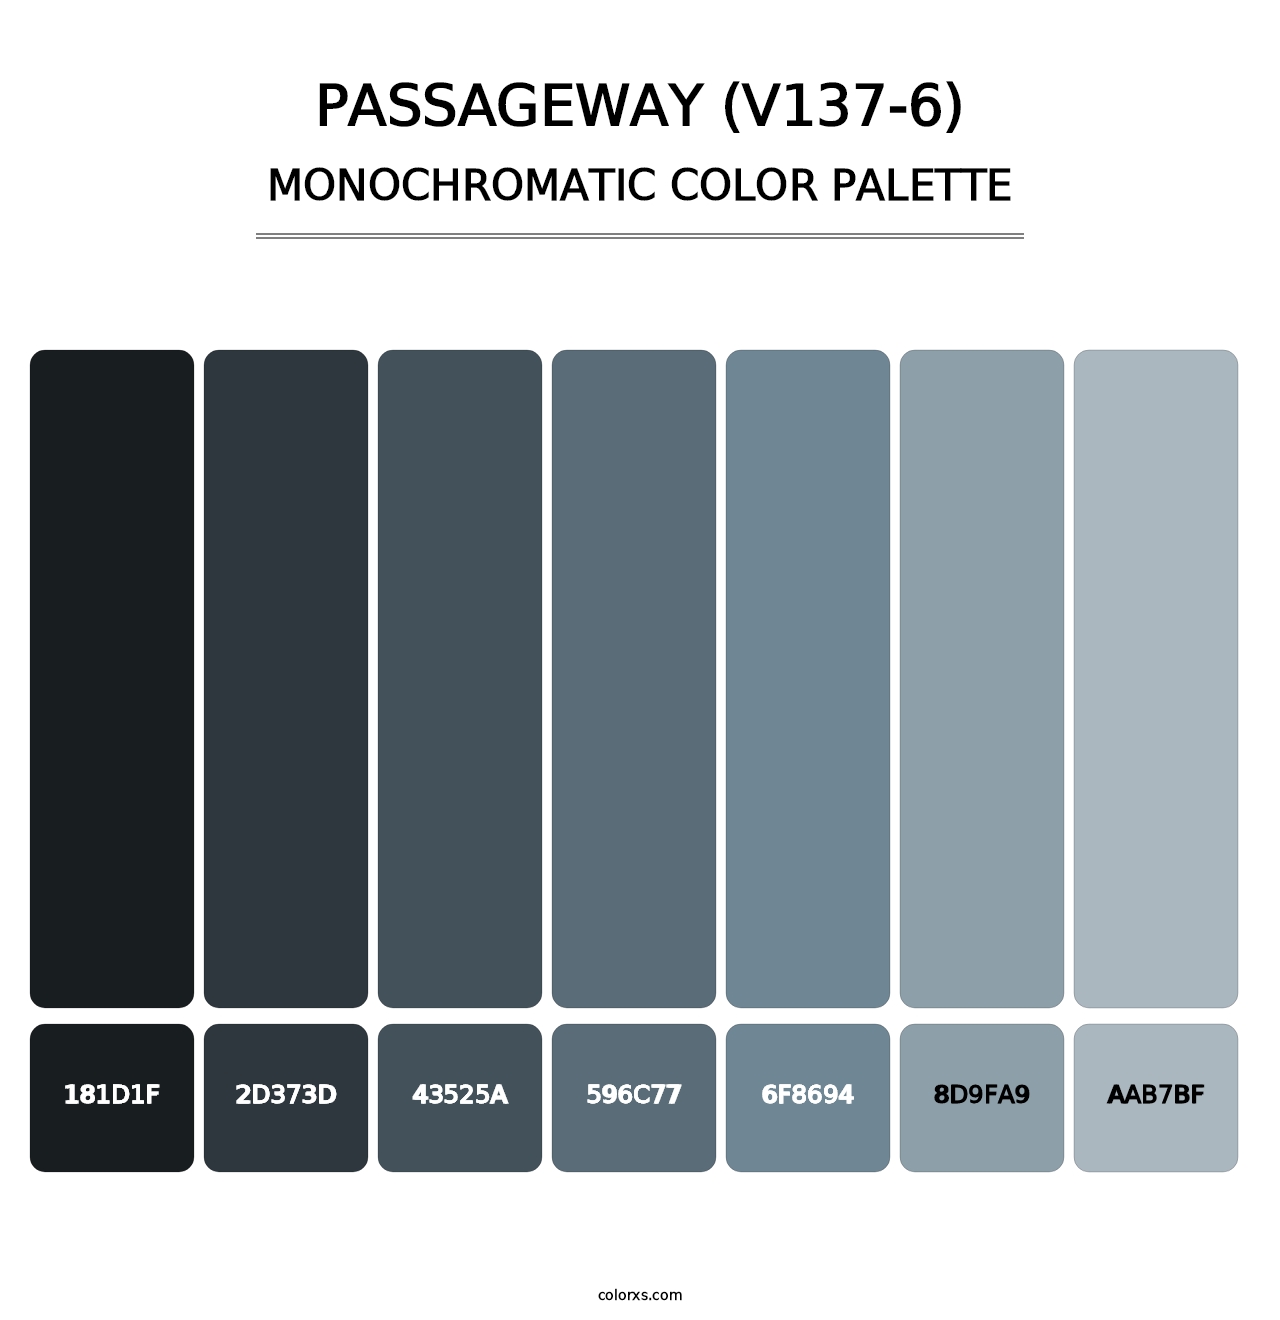 Passageway (V137-6) - Monochromatic Color Palette